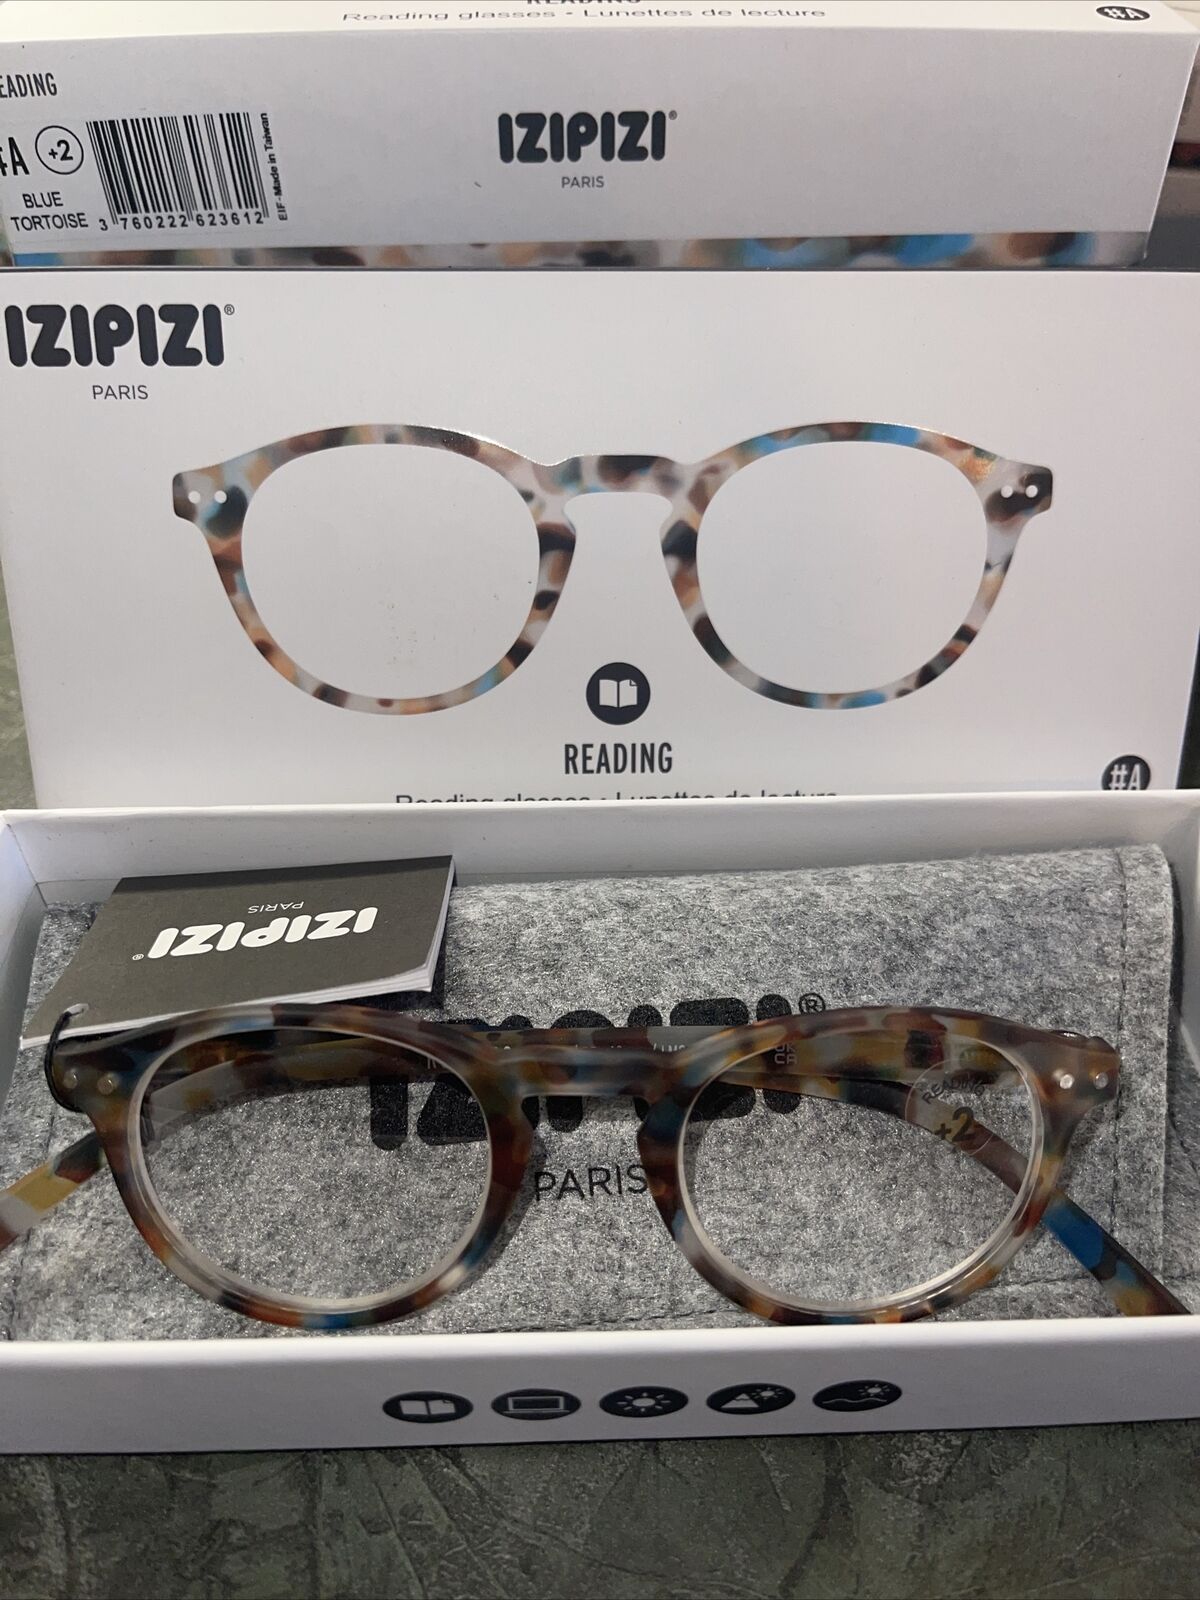 Izipizi High End Reading Glasses #A +2.00 Blue Tortoise Multi-Retail $49.95- NEW